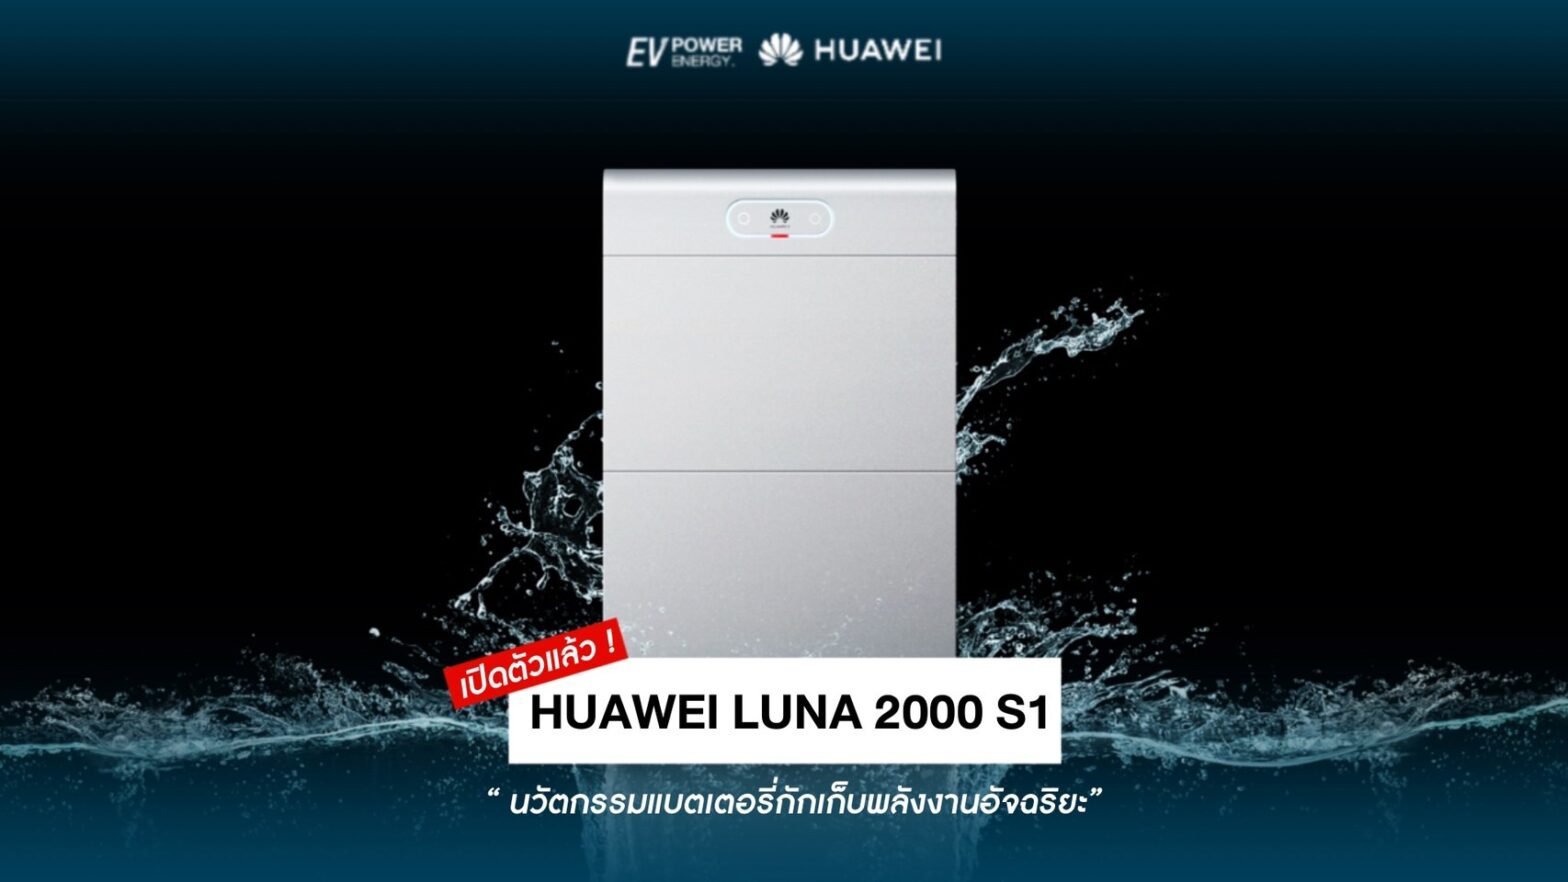 Huawei ปลุกกระแสพลังงานสะอาด เปิดตัว “Huawei Luna 2000 S1” นวัตกรรมแบตเตอรี่กักเก็บพลังงาน